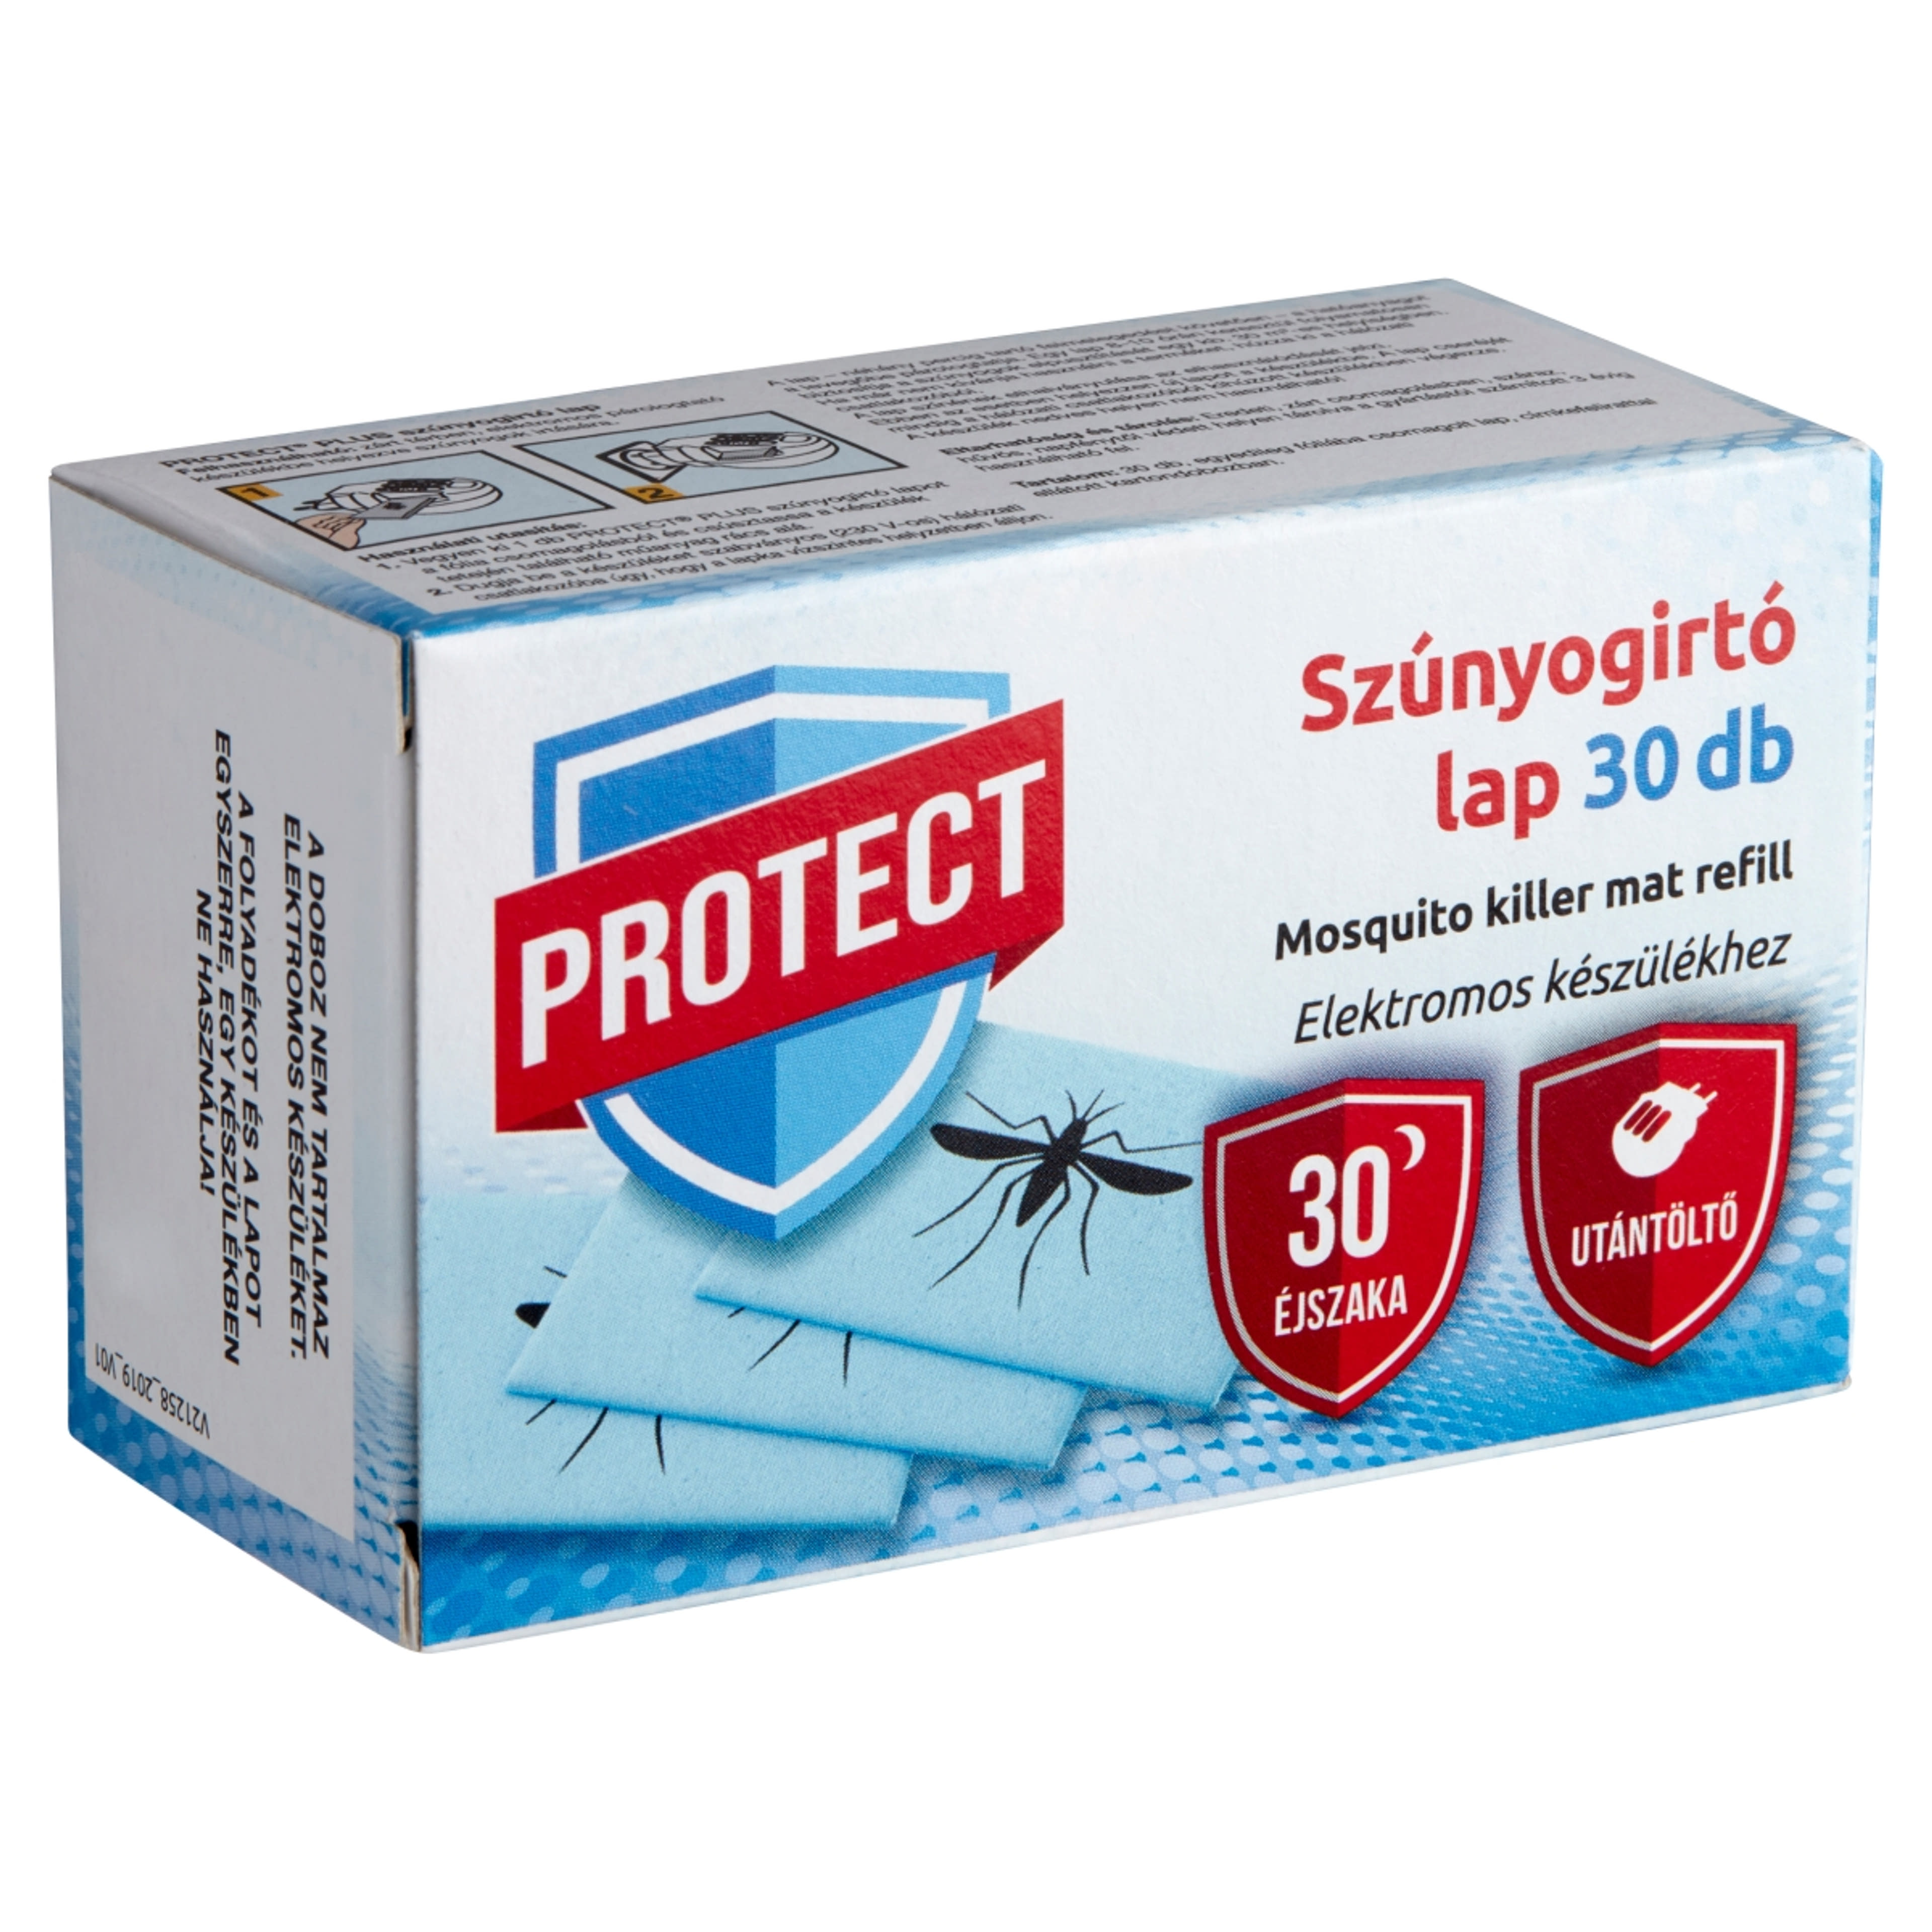 Protect plus szúnyogirtó lap utántöltő - 30 db-2